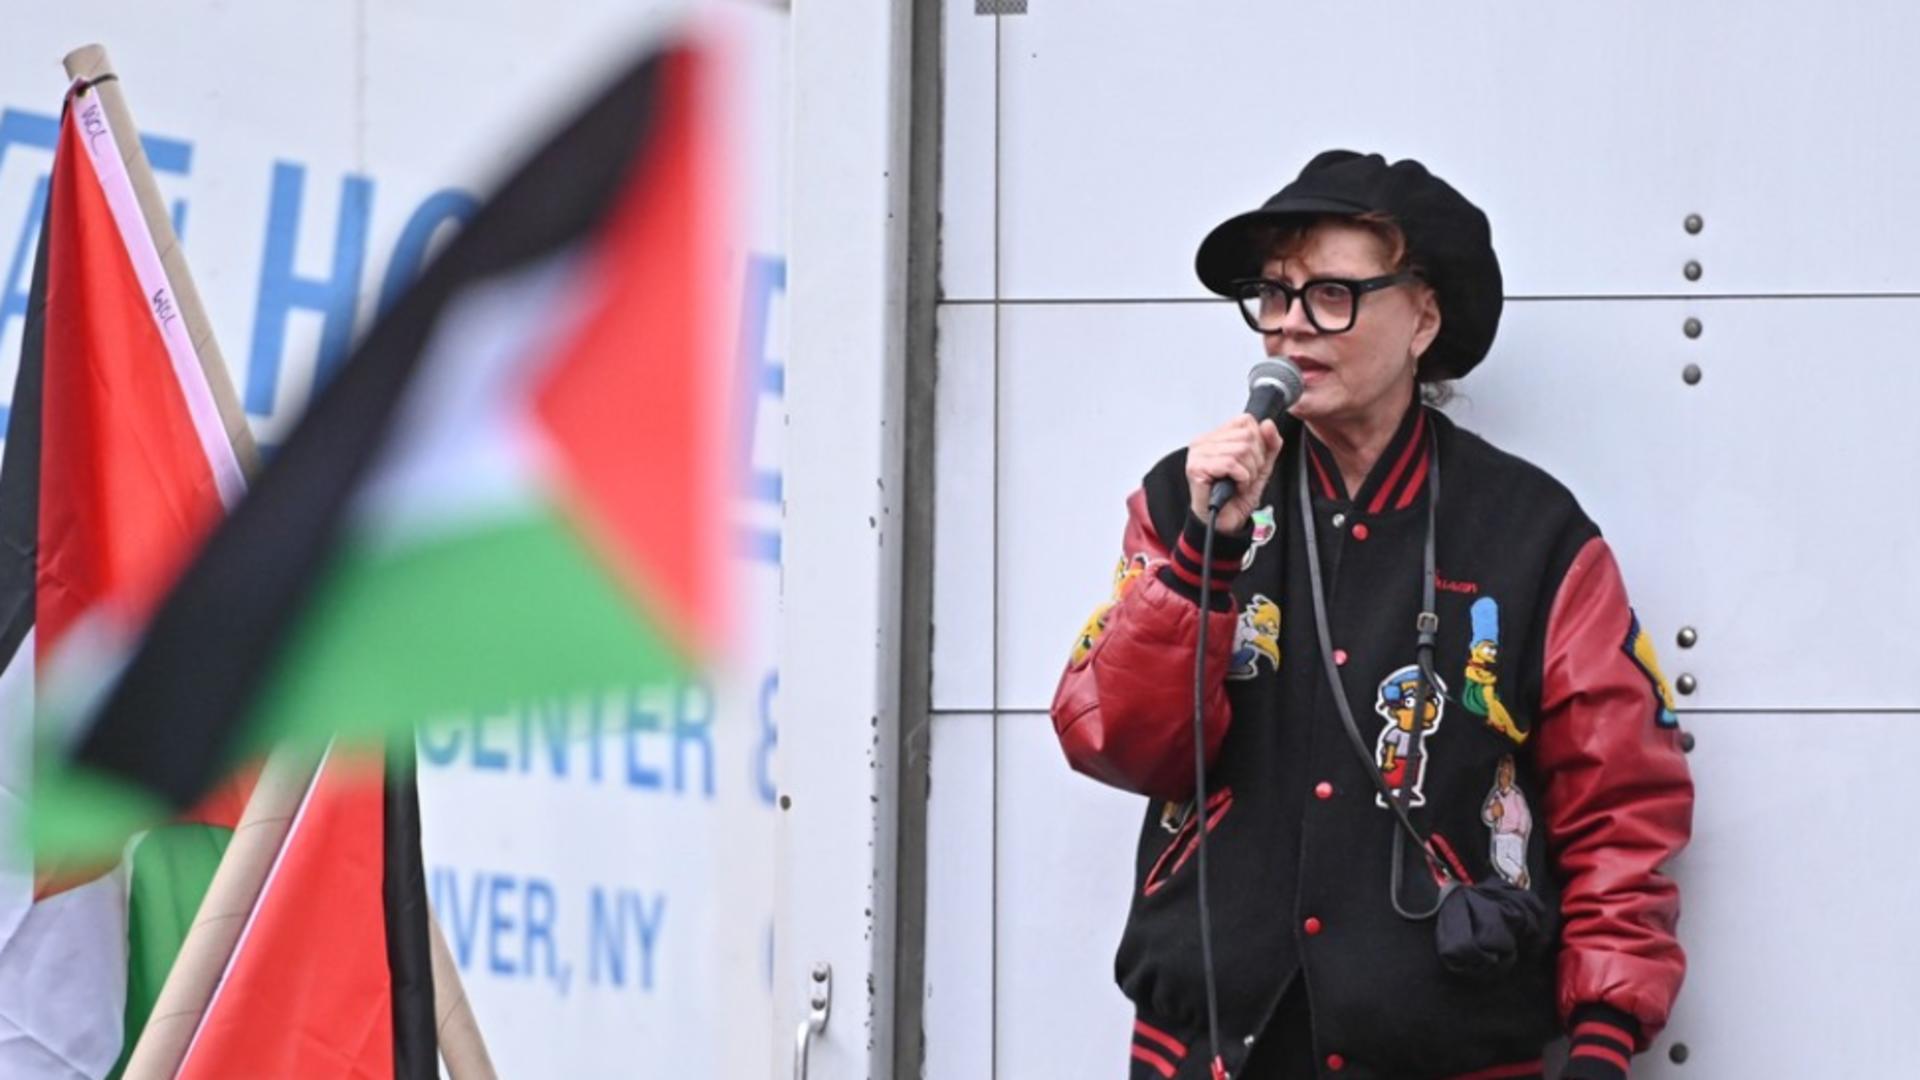 Celebra actriță Susan Sarandon, pusă la zid după poziția pro-palestinană – Declarația incendiară în care compară evreii cu musulmanii din SUA